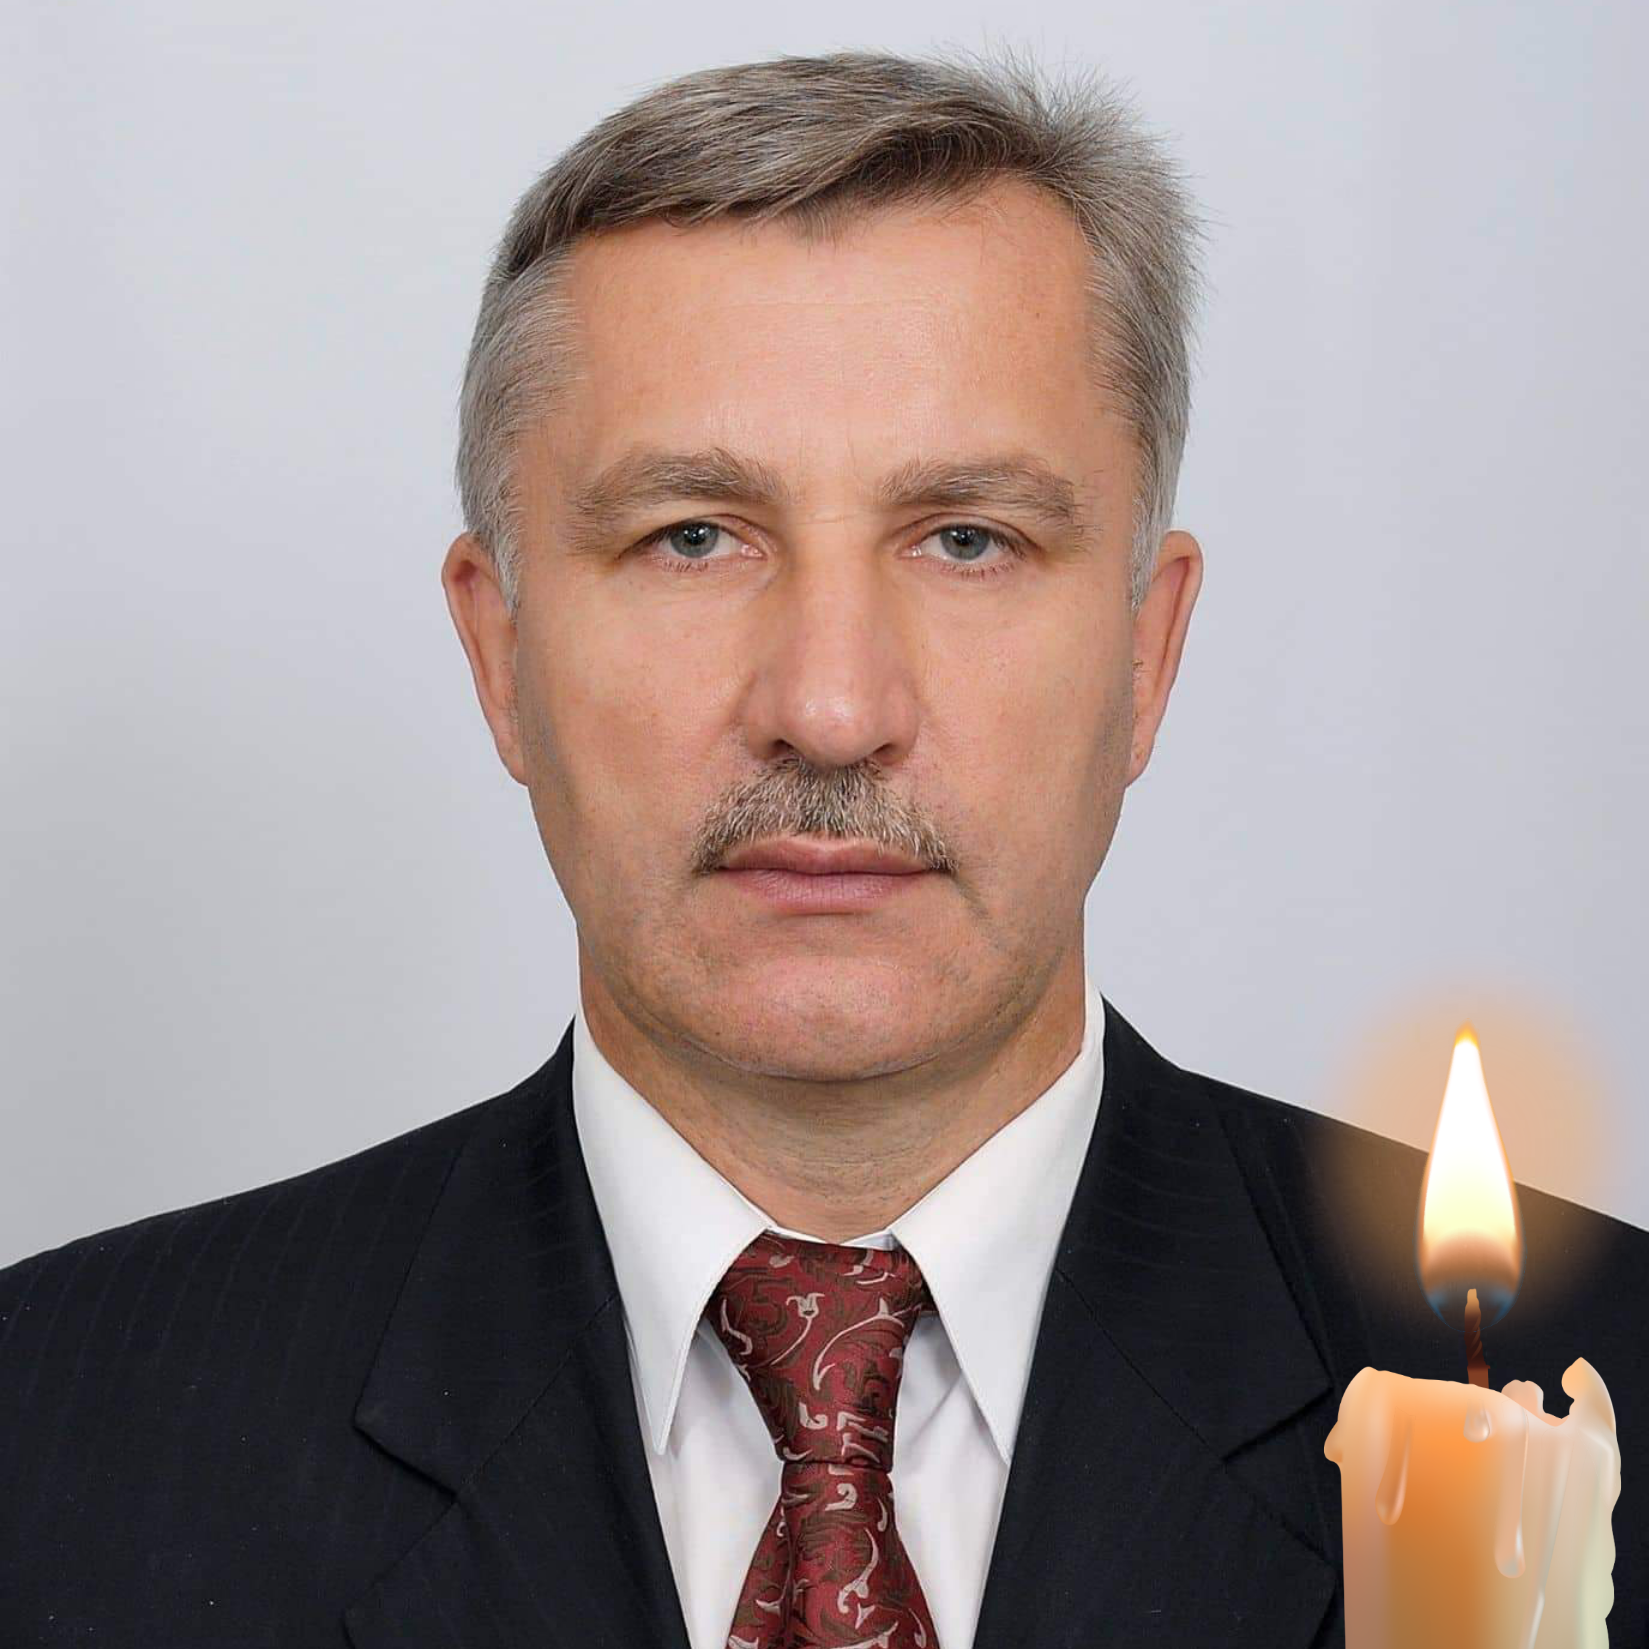 При виконанні бойових завдань загинув наш земляк, громадський діяч, політик, активіст, депутат районної ради Віктор Гончарук